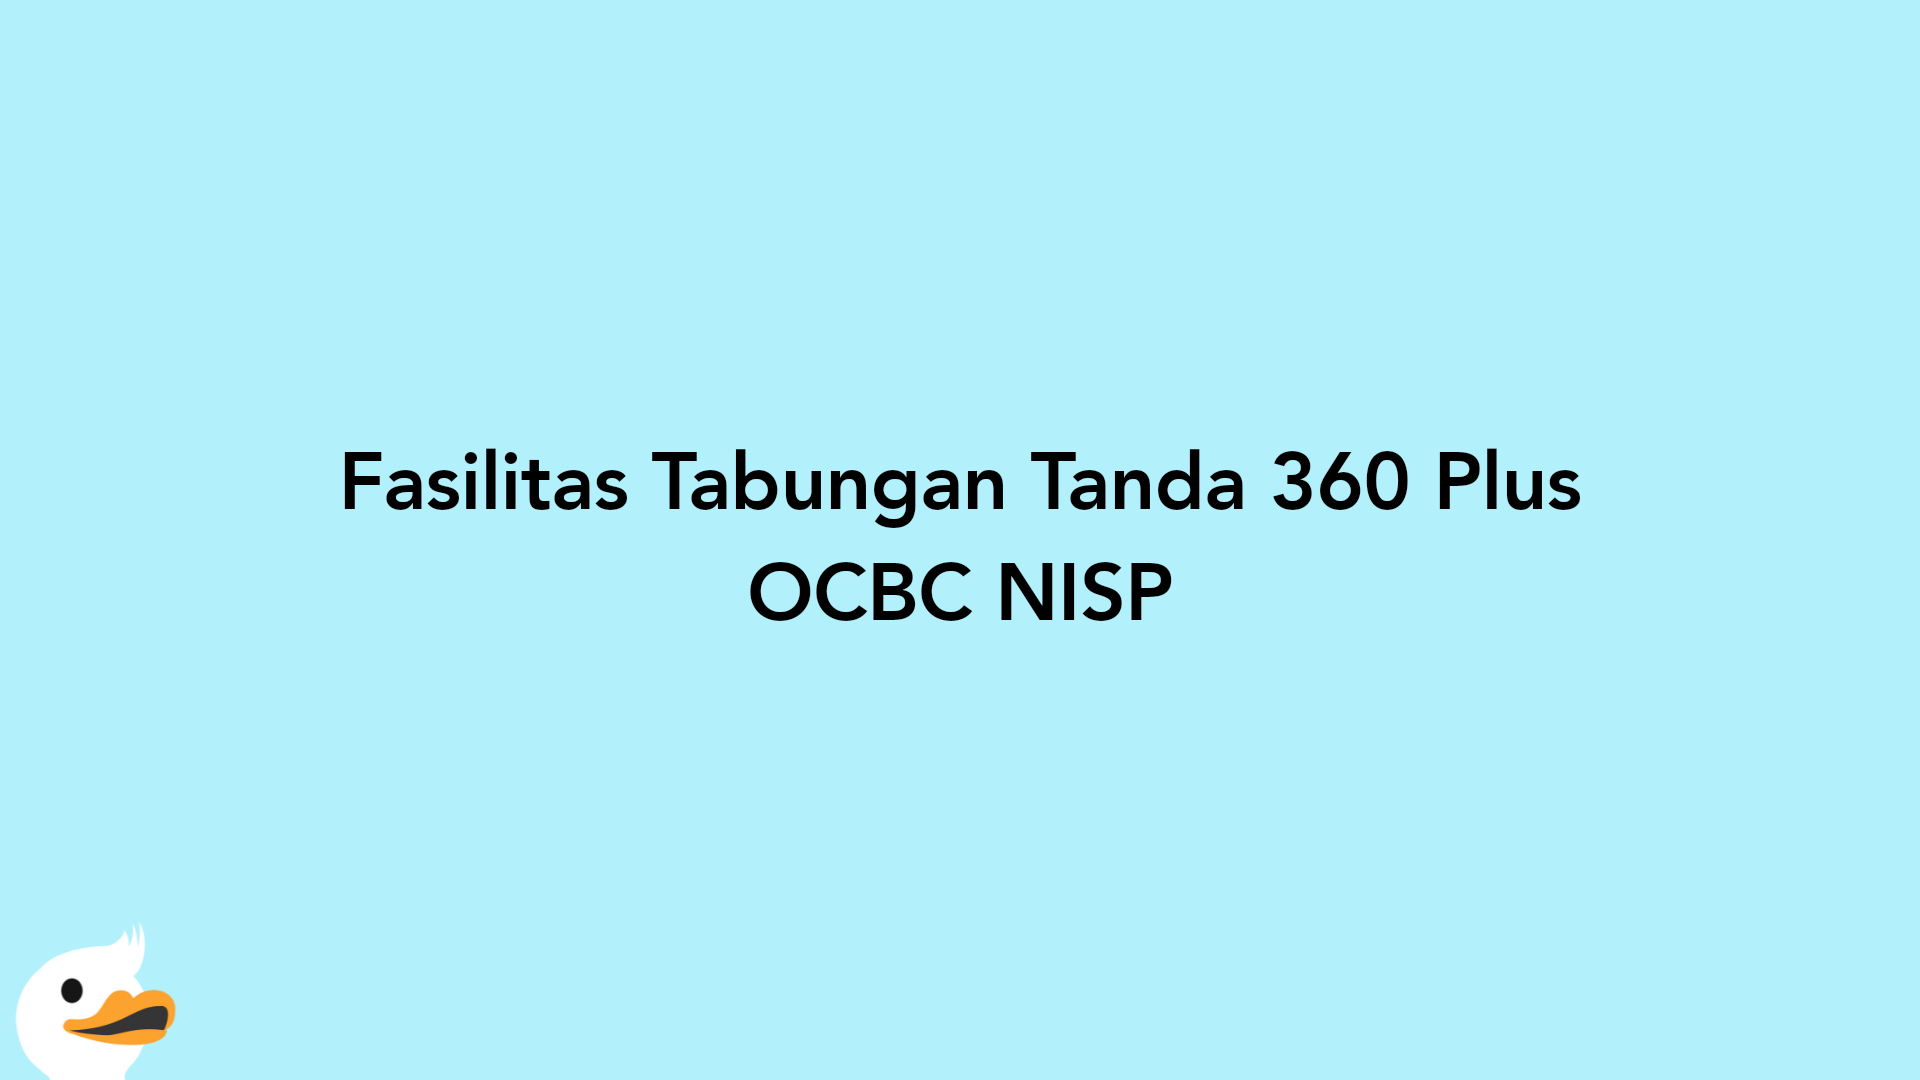 Fasilitas Tabungan Tanda 360 Plus OCBC NISP